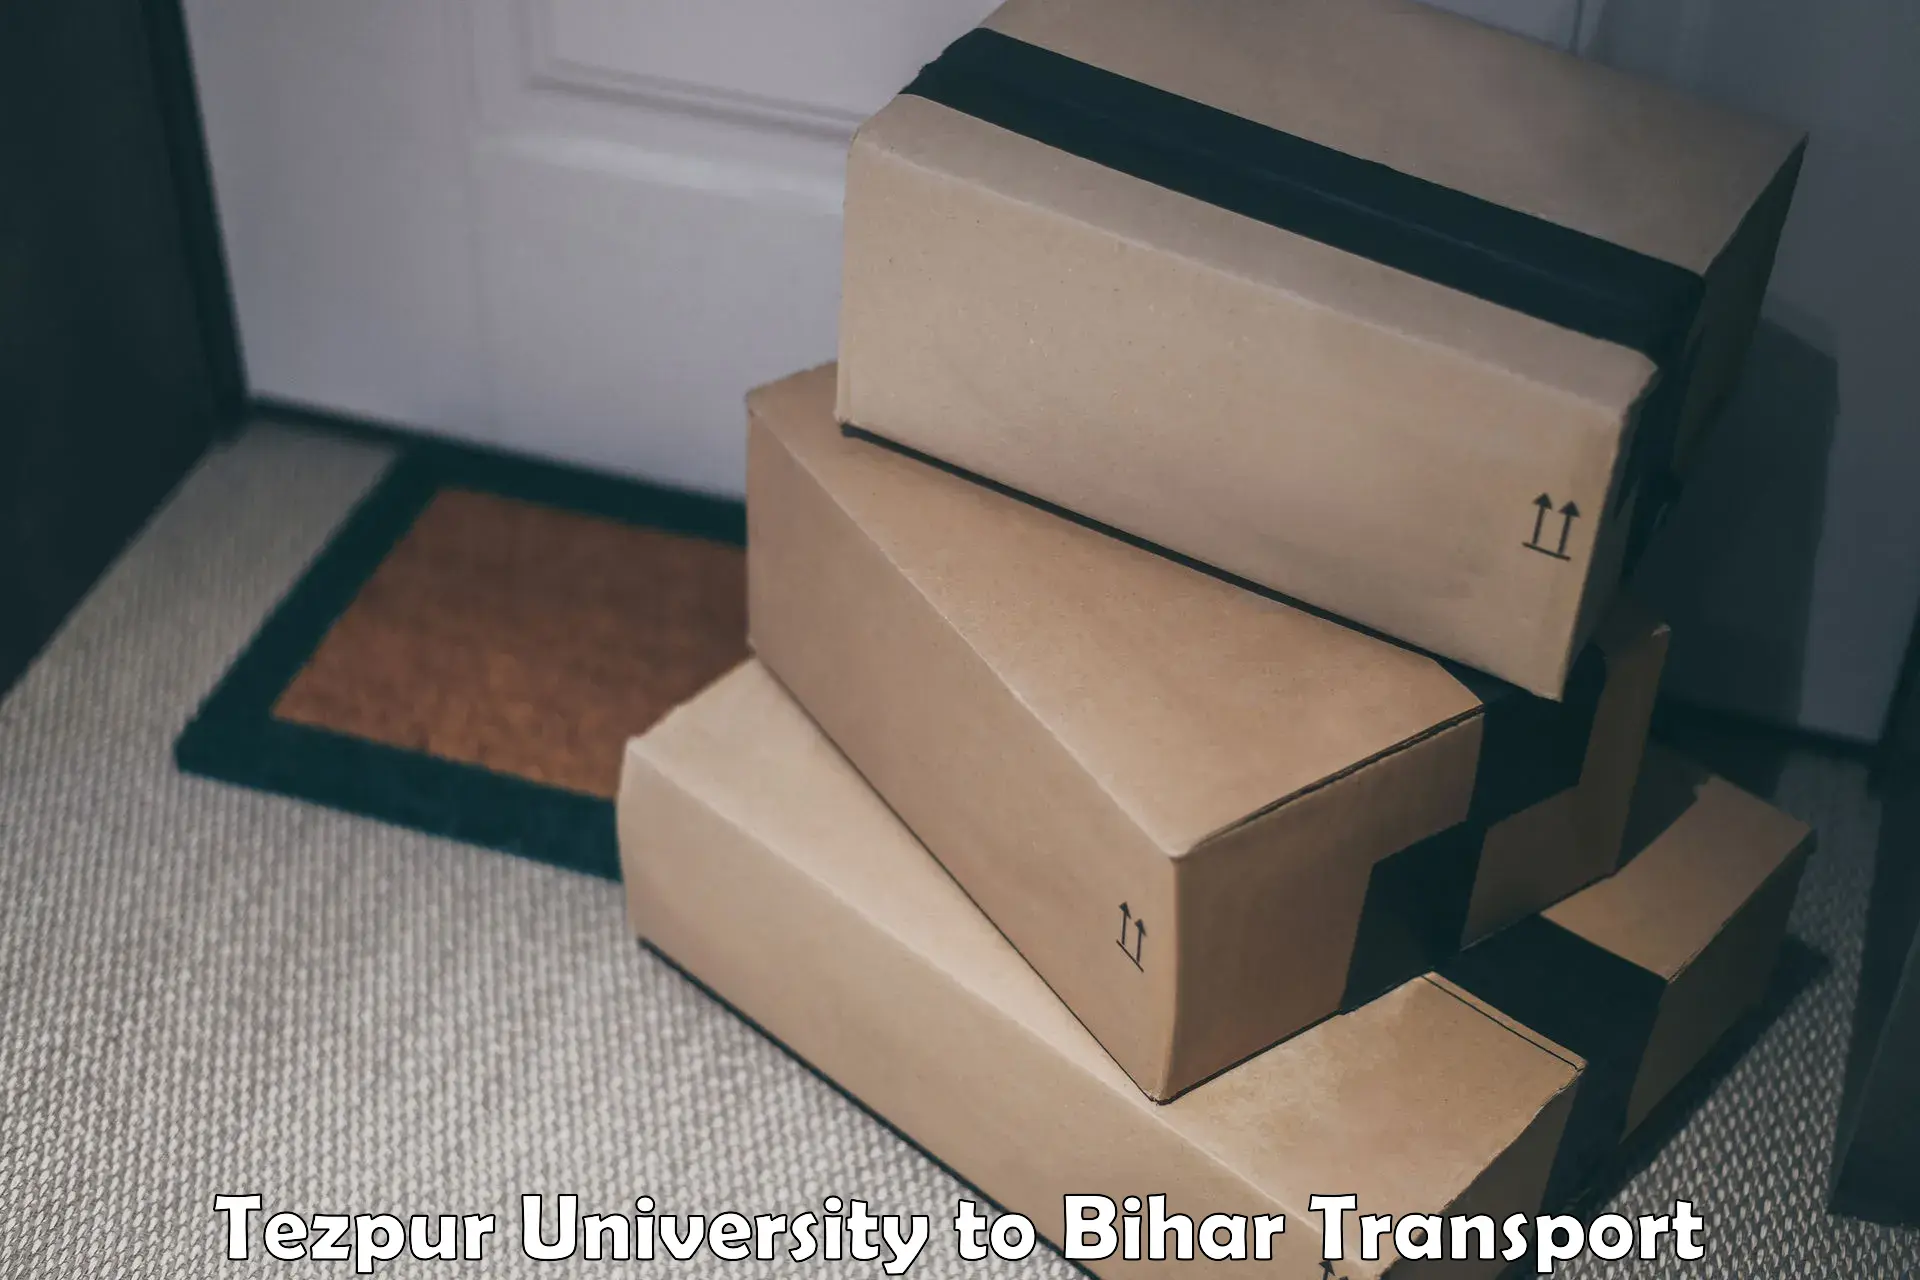 Furniture transport service Tezpur University to Motipur